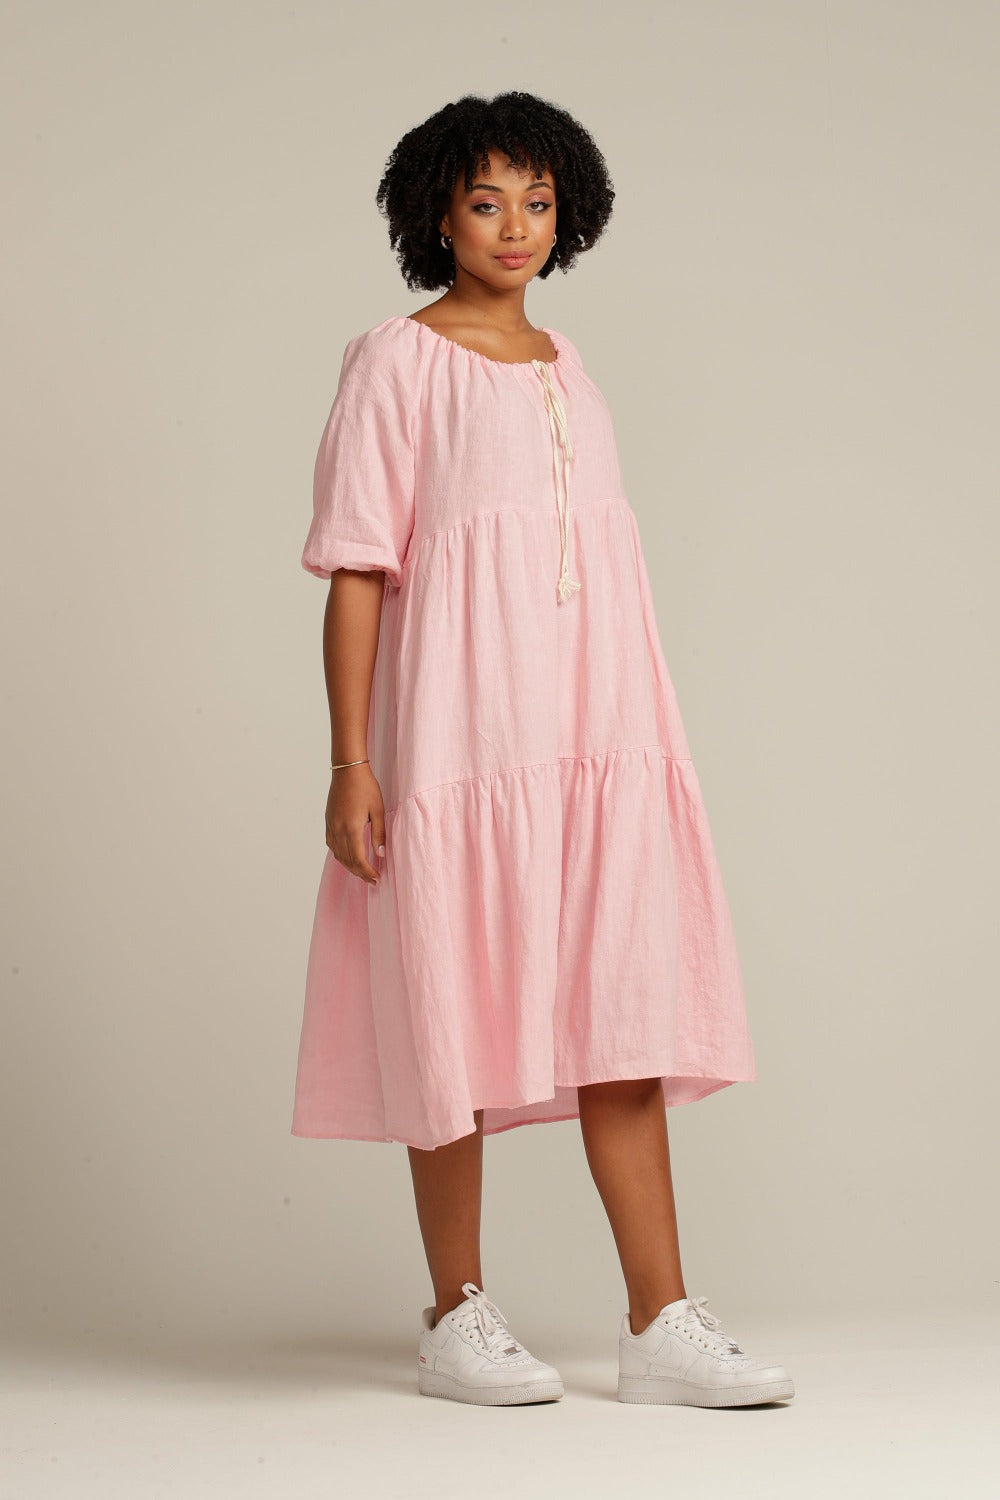 brown woman wearing a pink linen knee length dress